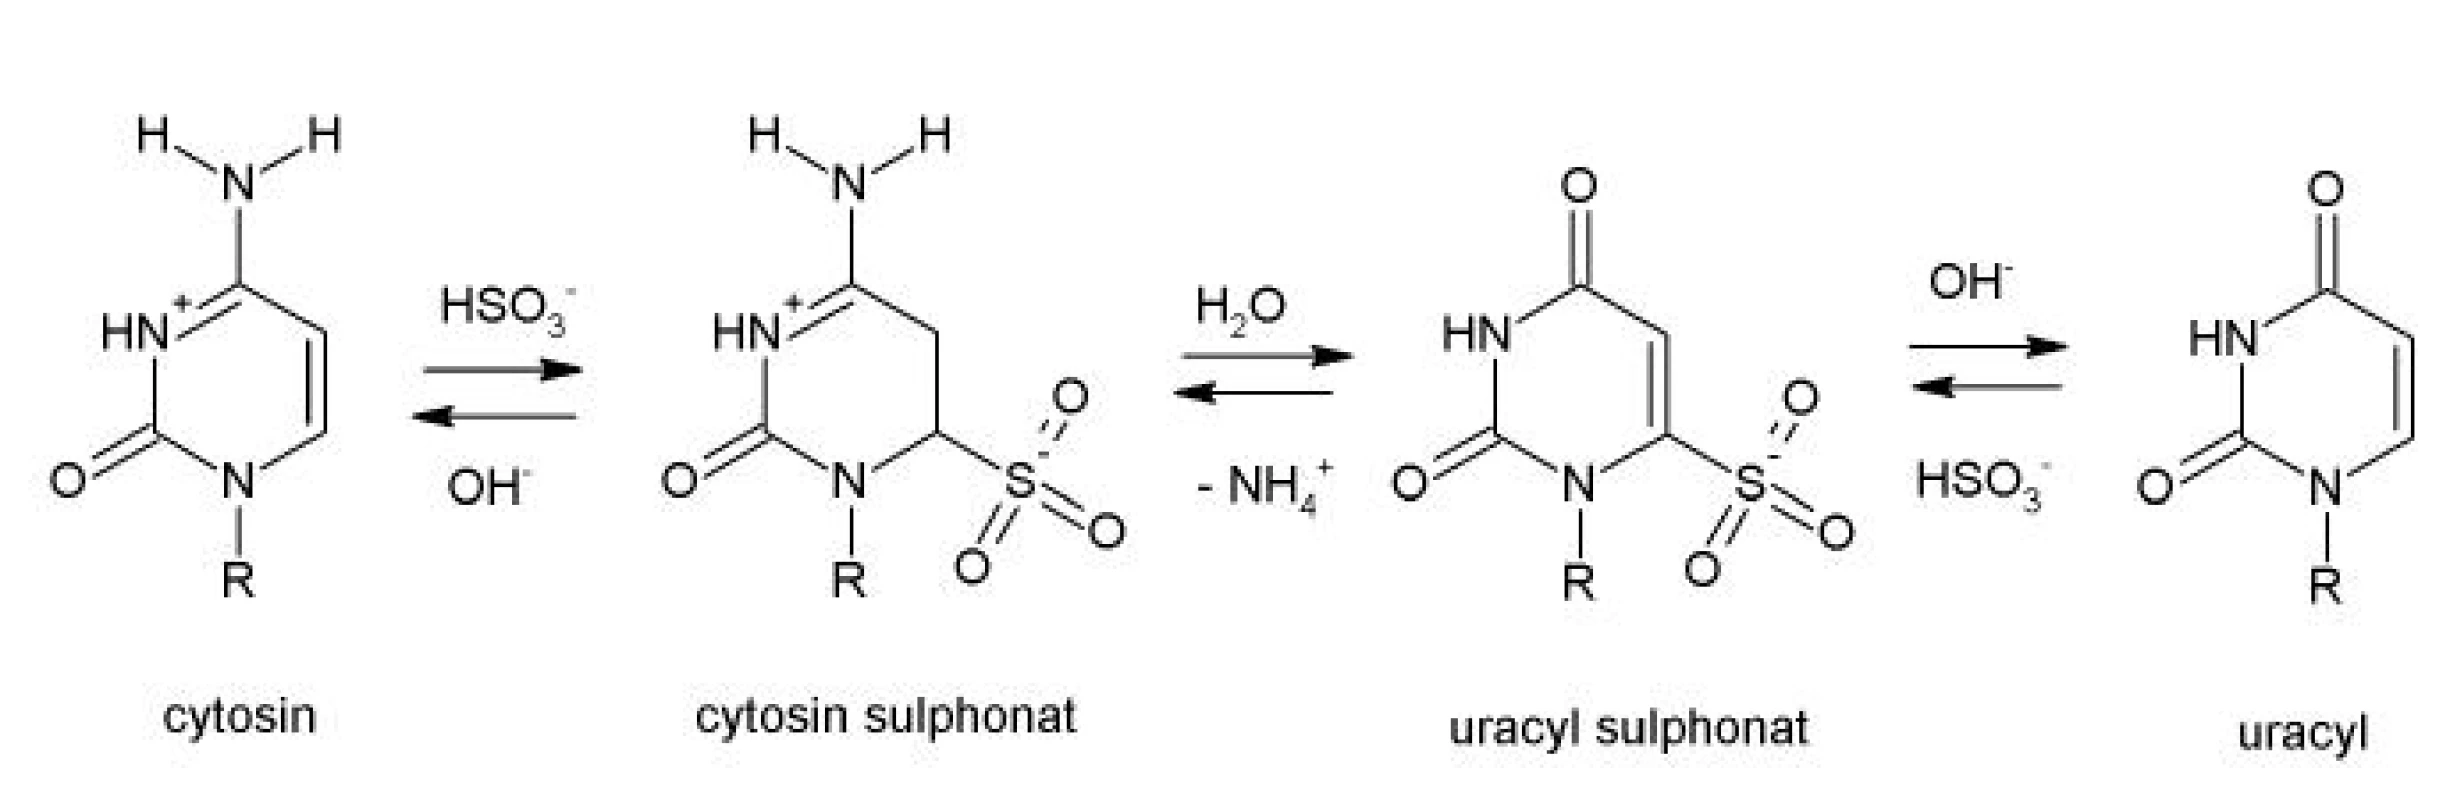 Chemický průběh modifikace cytosinu na uracil